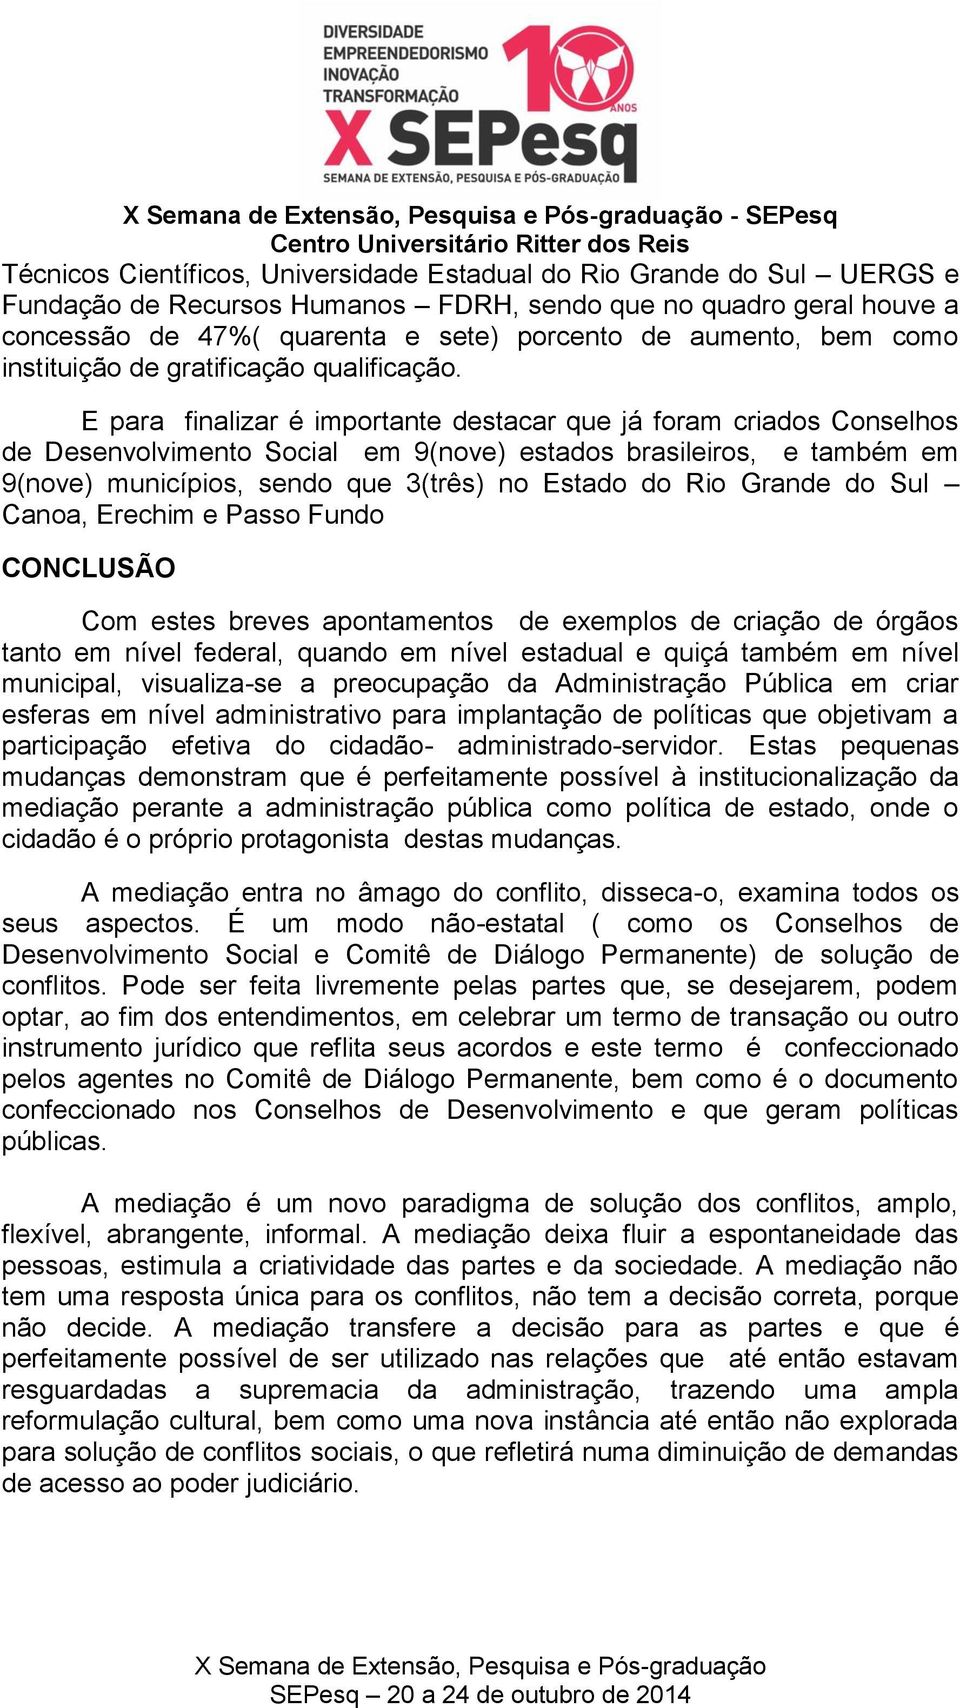 E para finalizar é importante destacar que já foram criados Conselhos de Desenvolvimento Social em 9(nove) estados brasileiros, e também em 9(nove) municípios, sendo que 3(três) no Estado do Rio